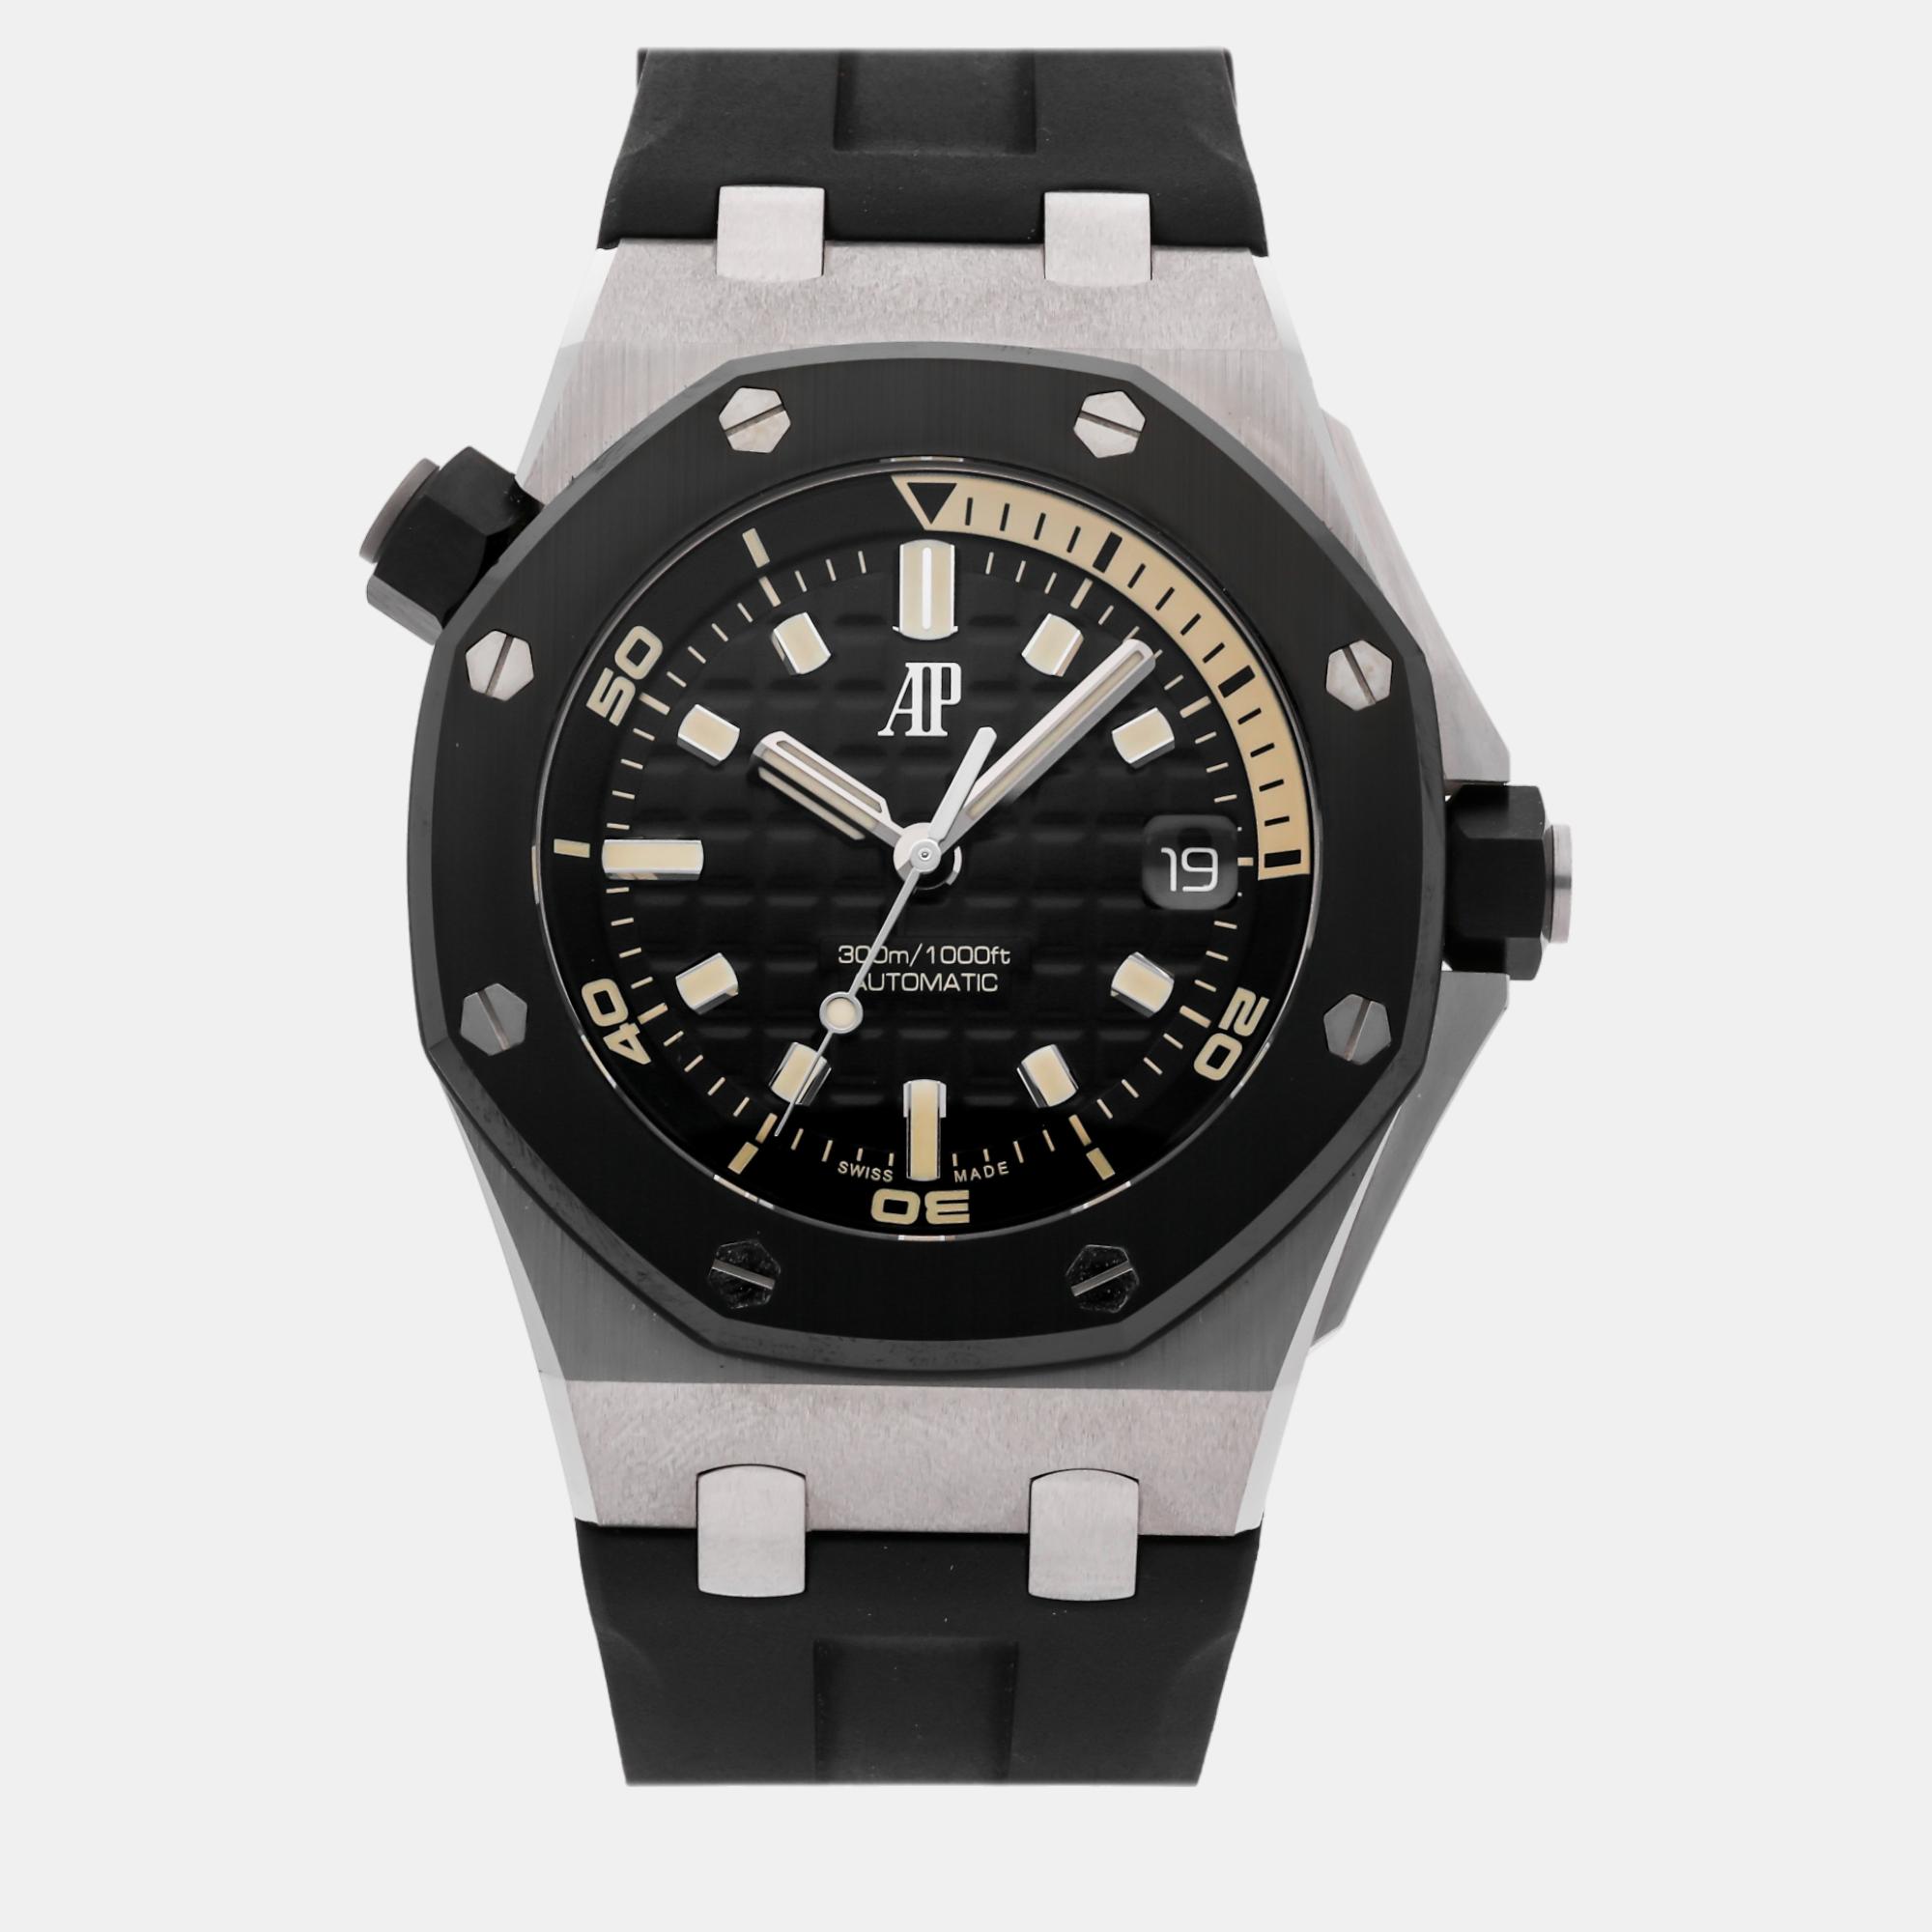 Audemars piguet black 18k white gold royal oak offshore 5720cn.oo.a002ca.01 automatic men's wristwatch 42 mm